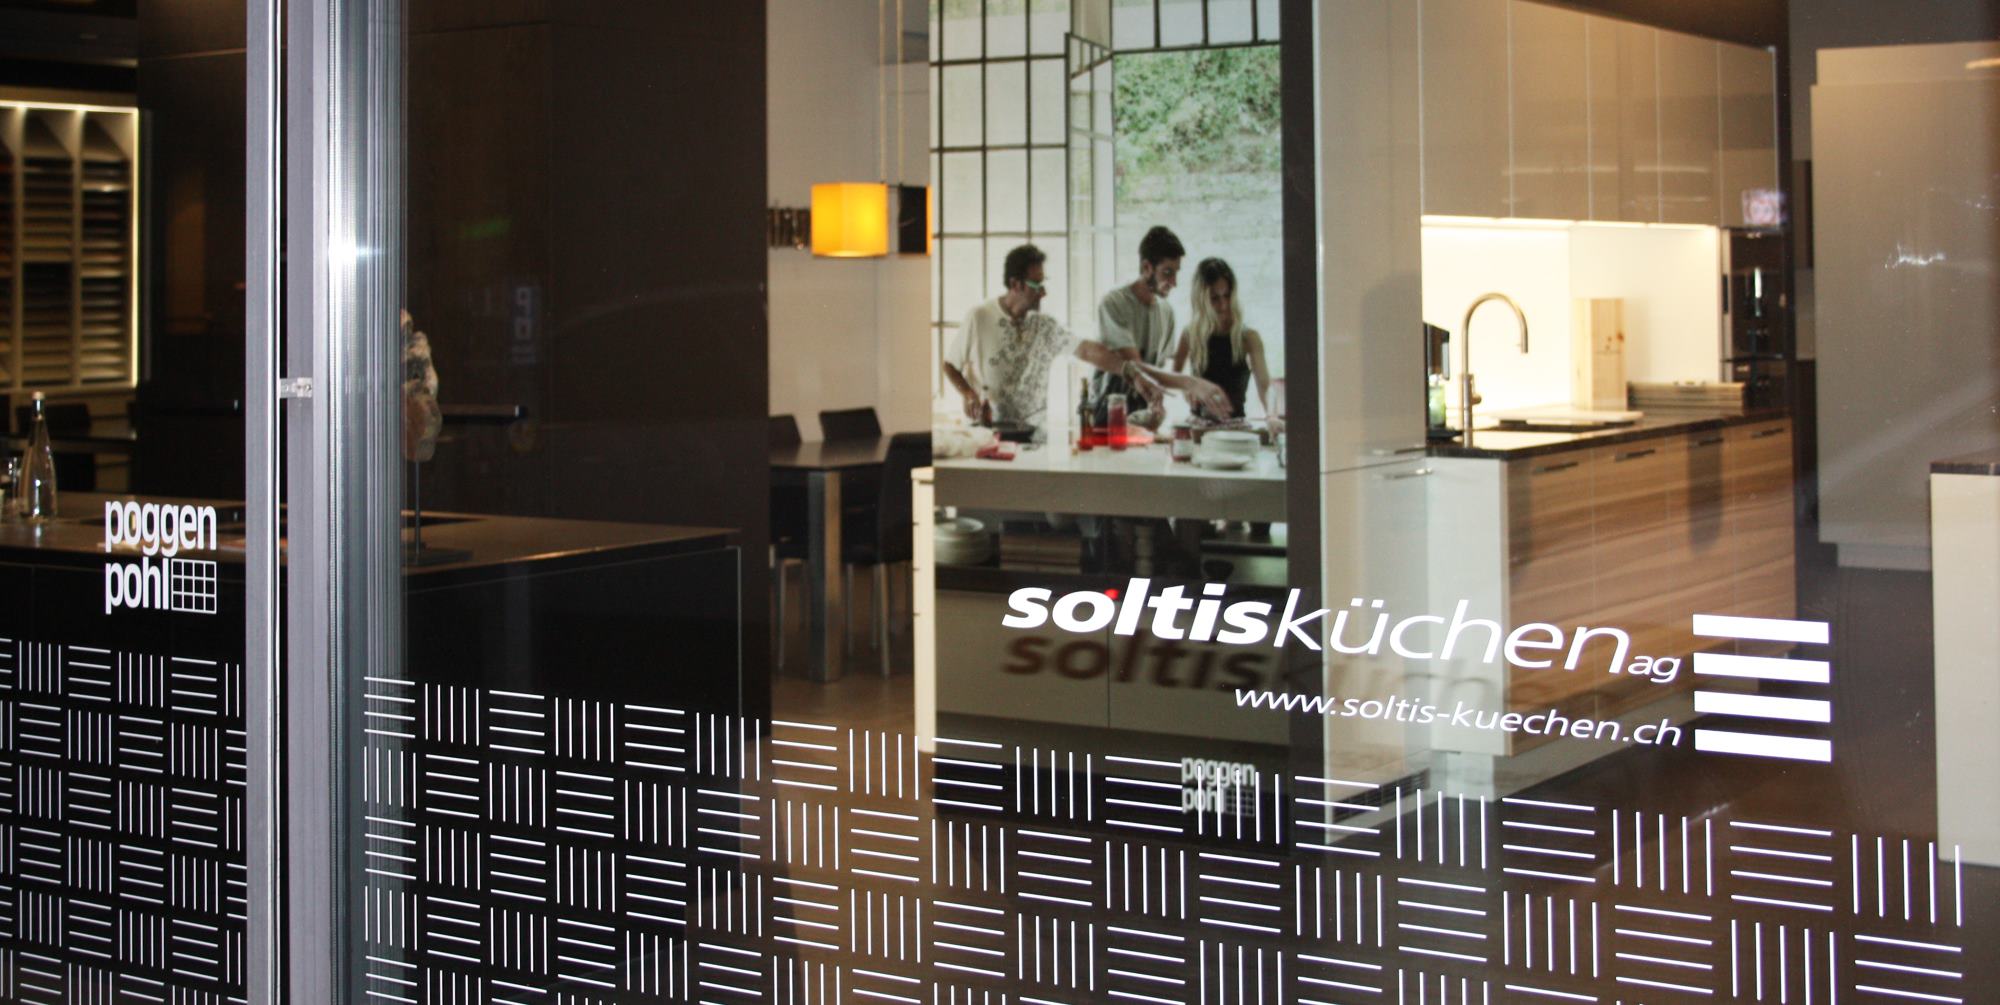 (c) Soltis-kuechen.ch